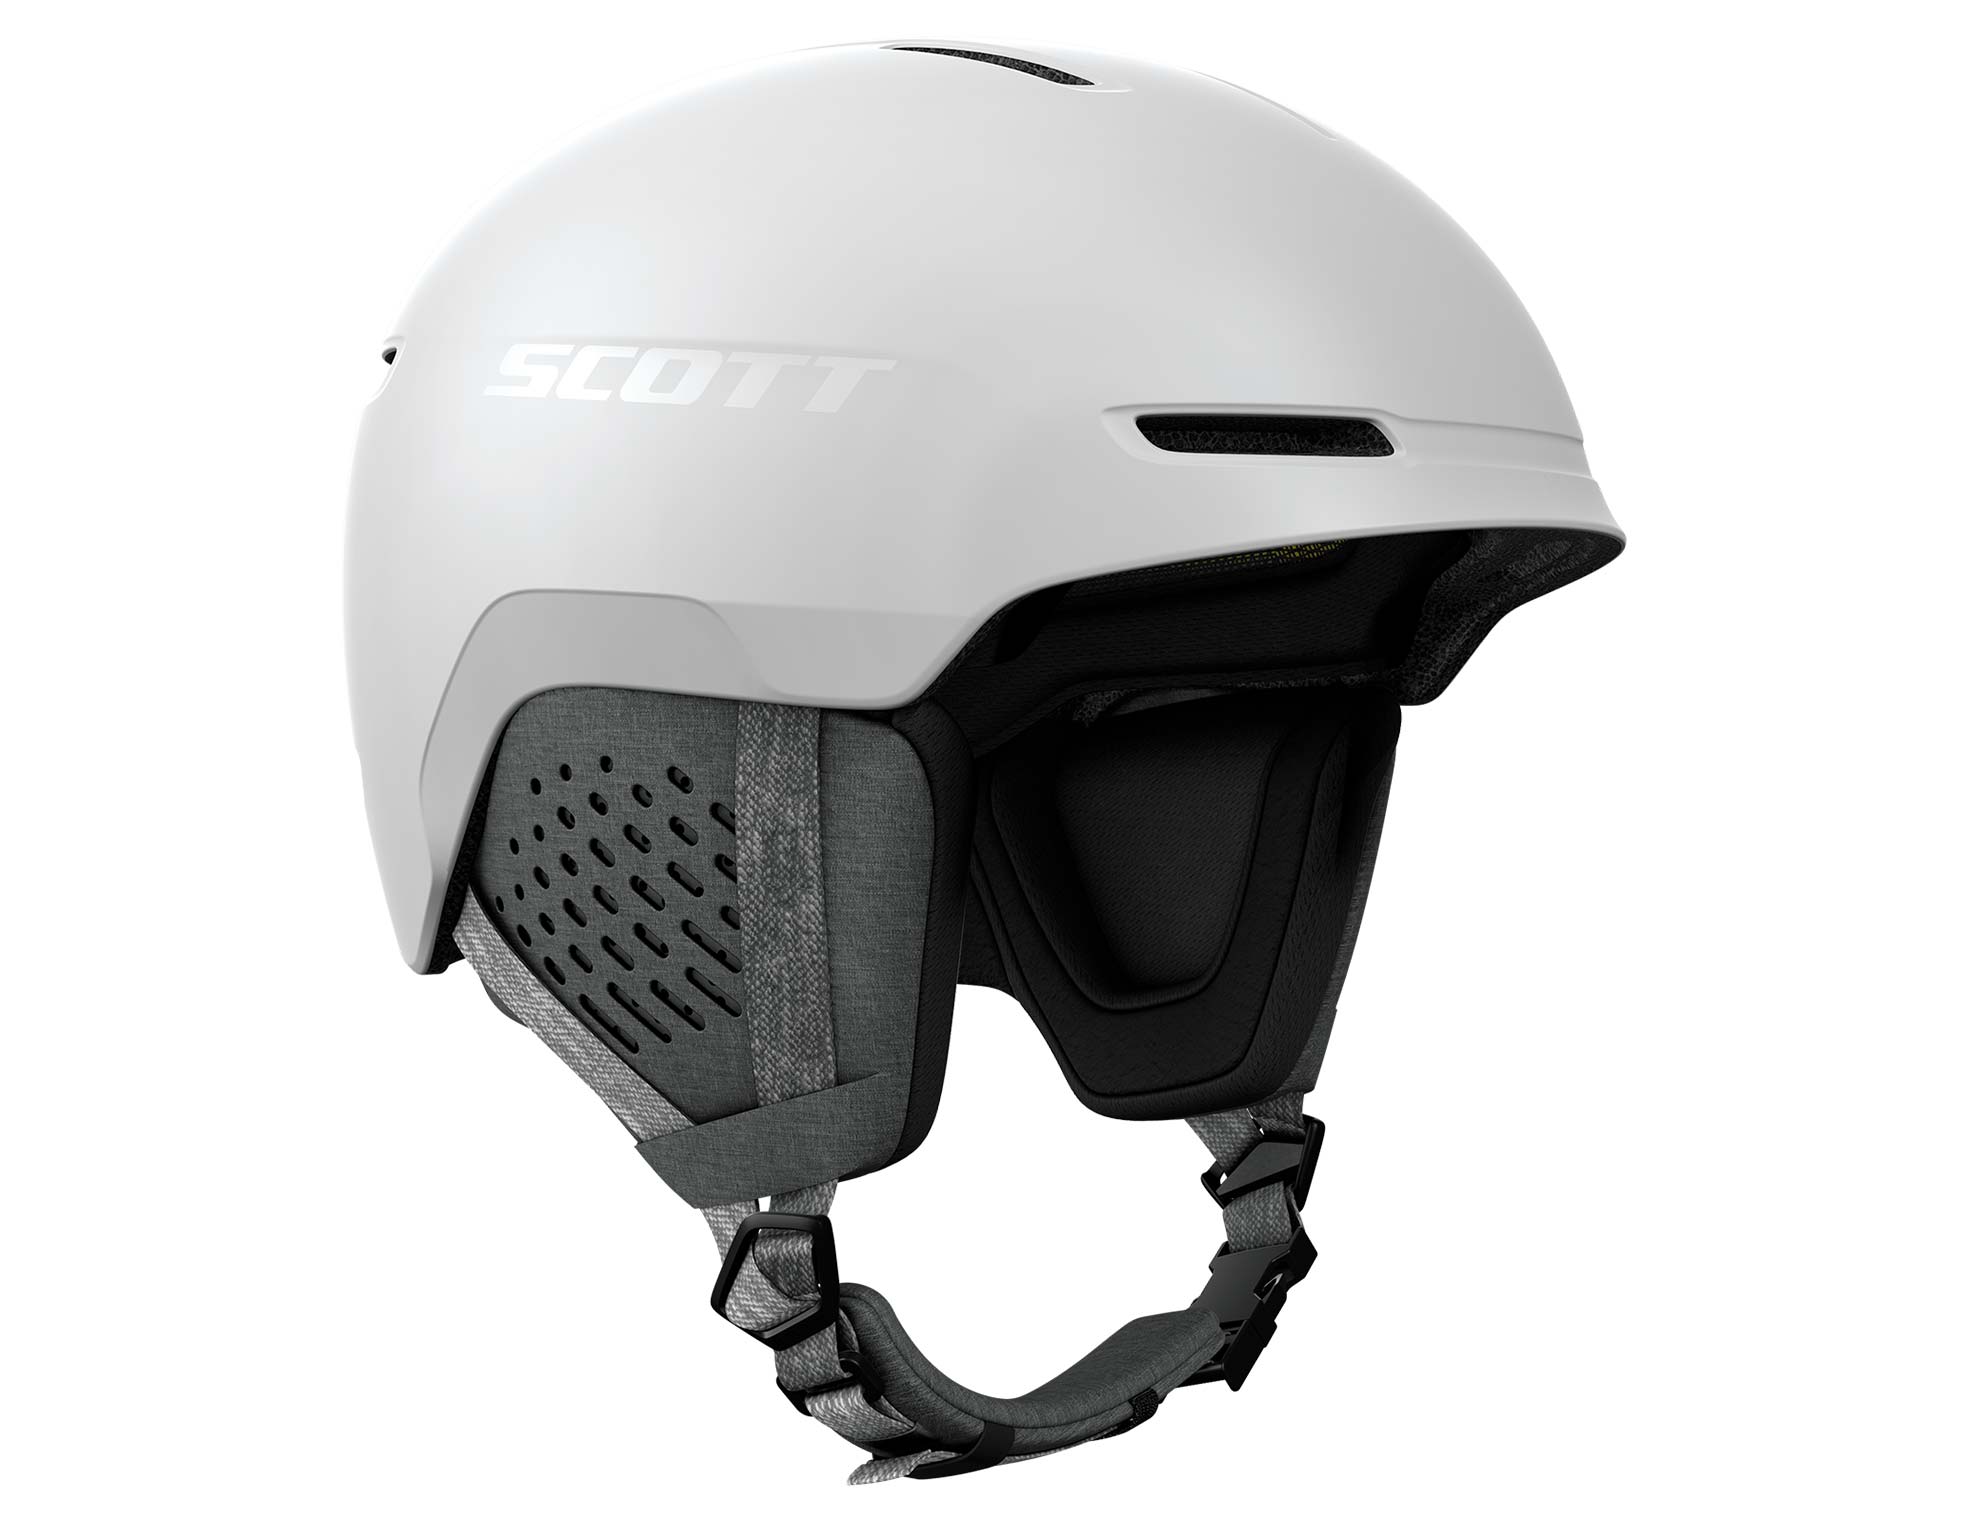 SCOTT Track Helmet